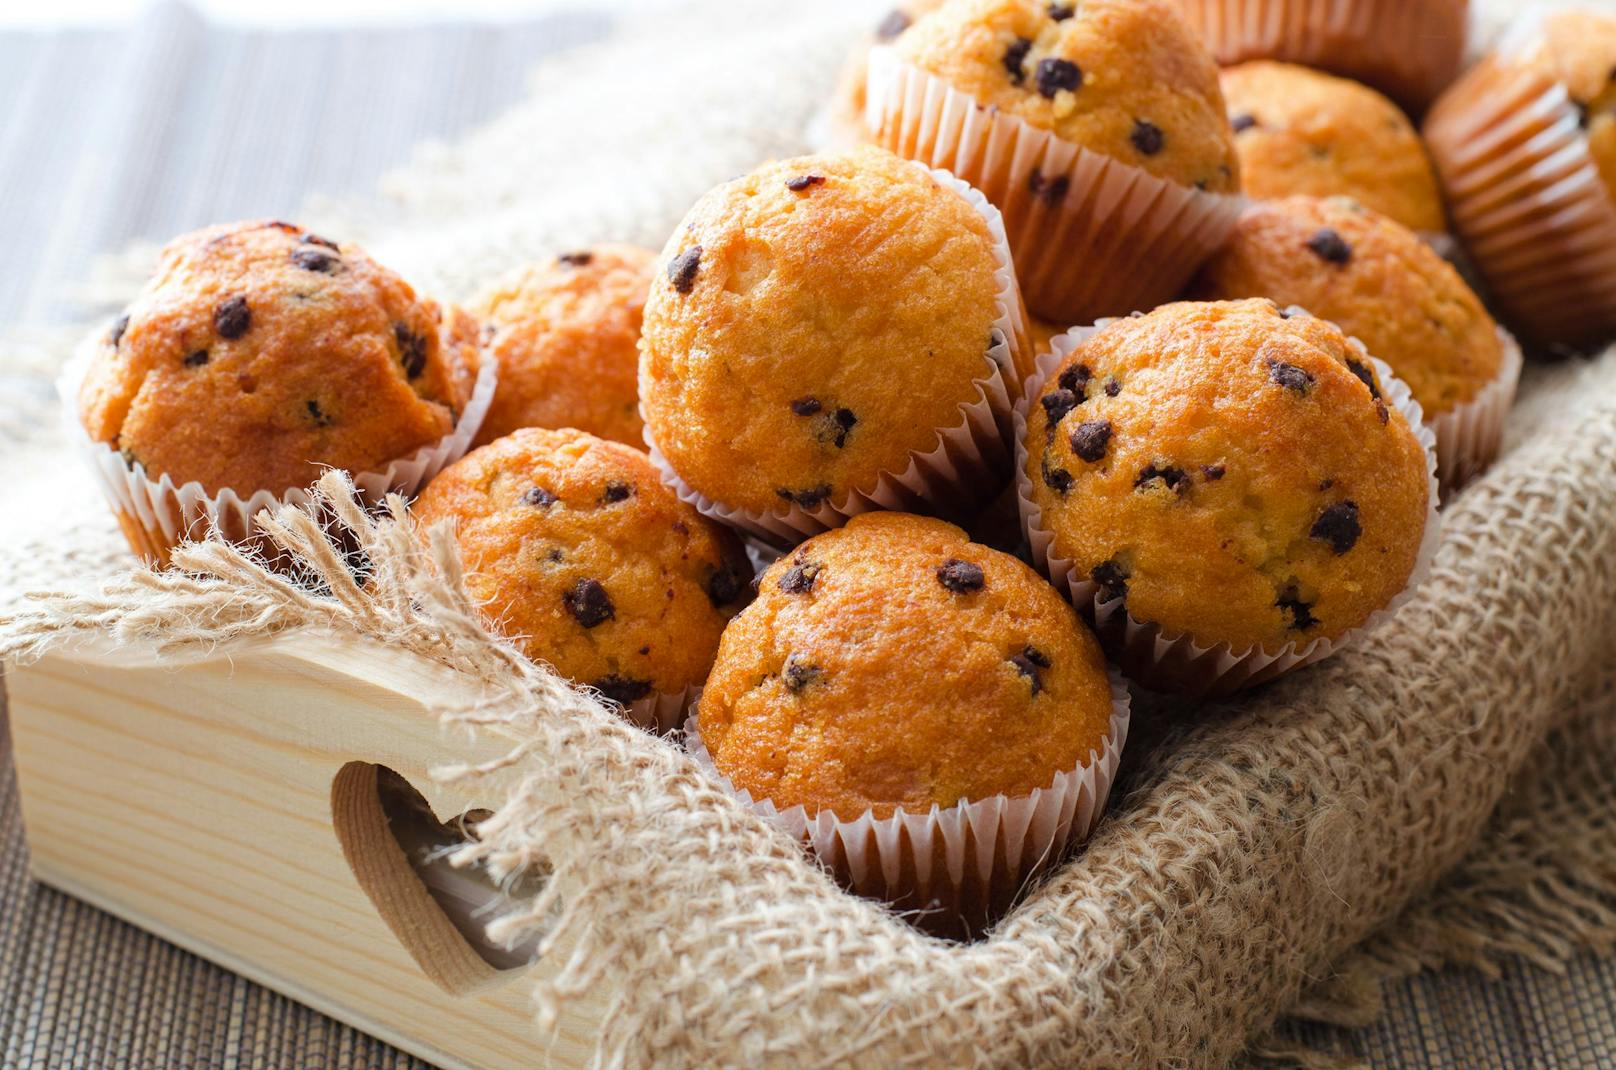 Köstliche Muffins wurden für eine Kärntnerin zur Gefahr. (Symbolbild)